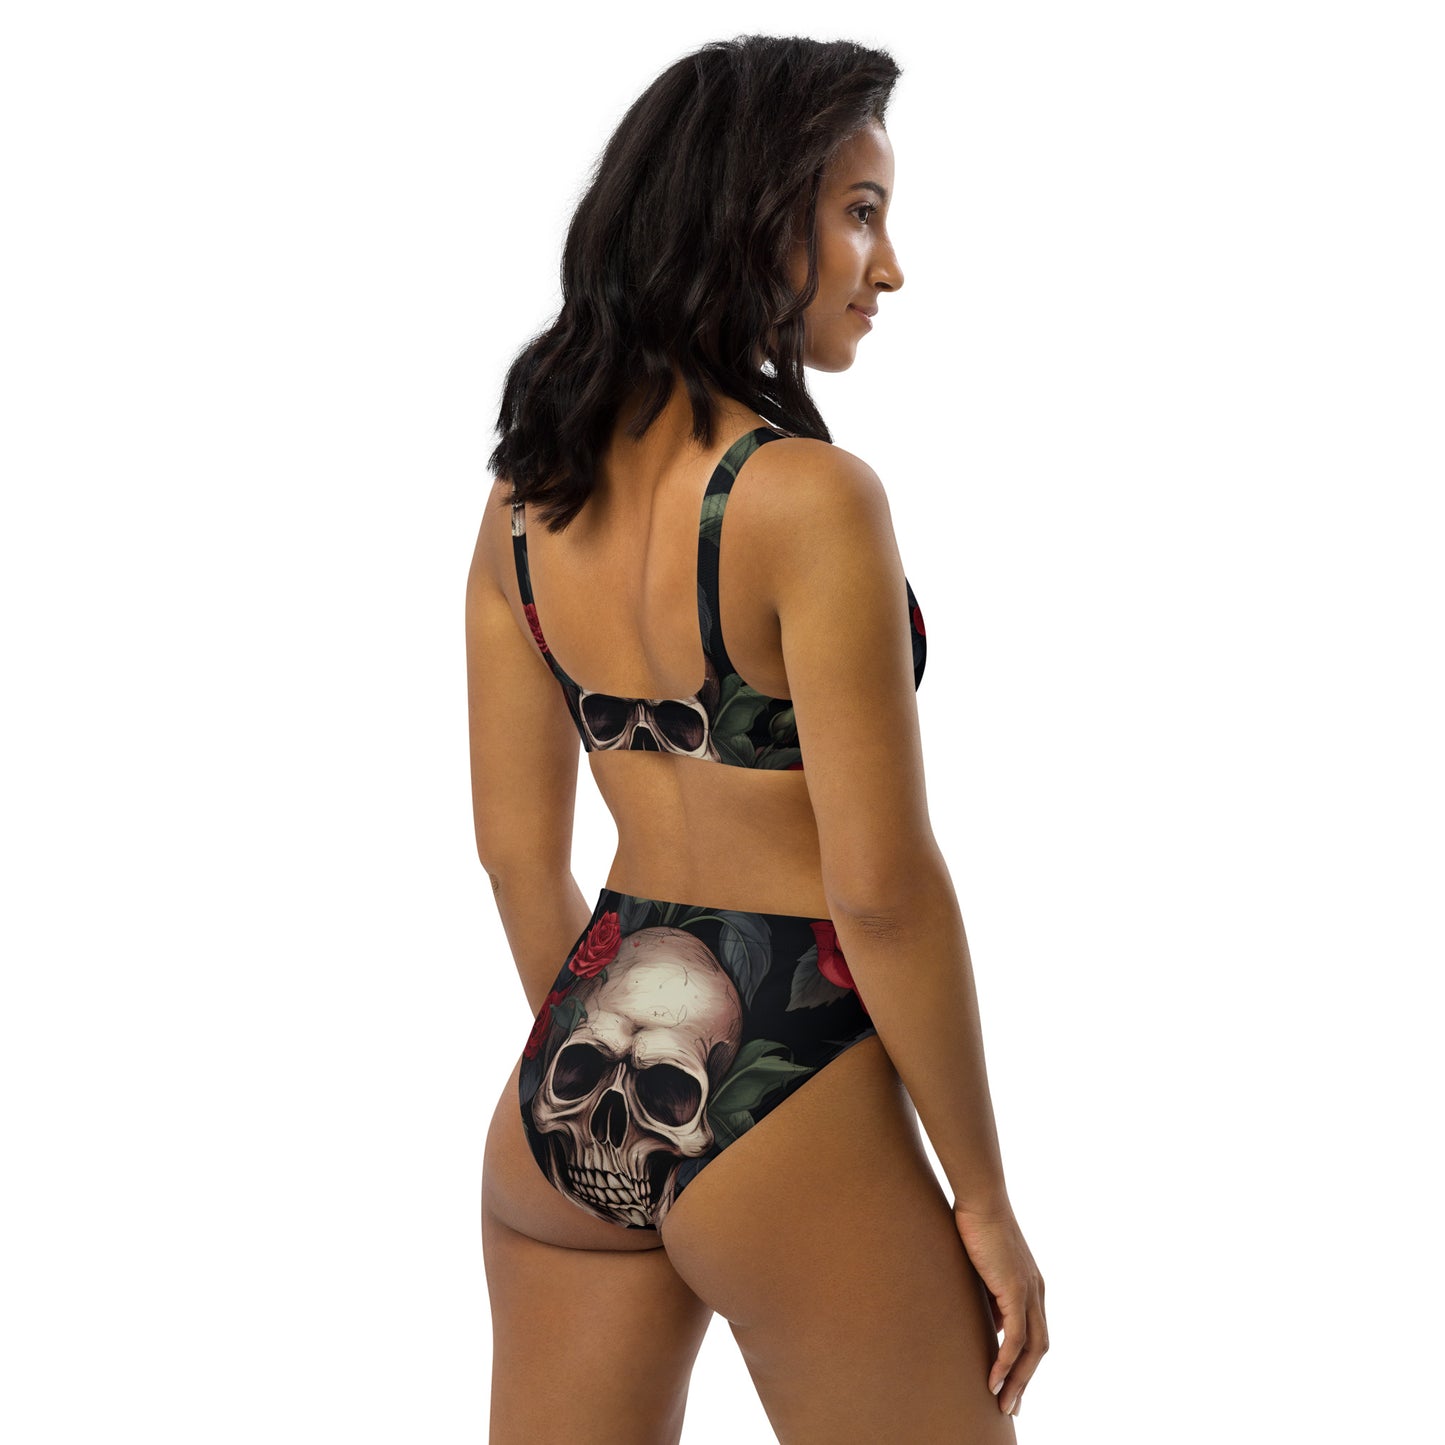 Zachte Goth-bikini / Gothic-zwempak met schedel / Gerecycleerde hoog getailleerde bikini / Eco Goth-mode